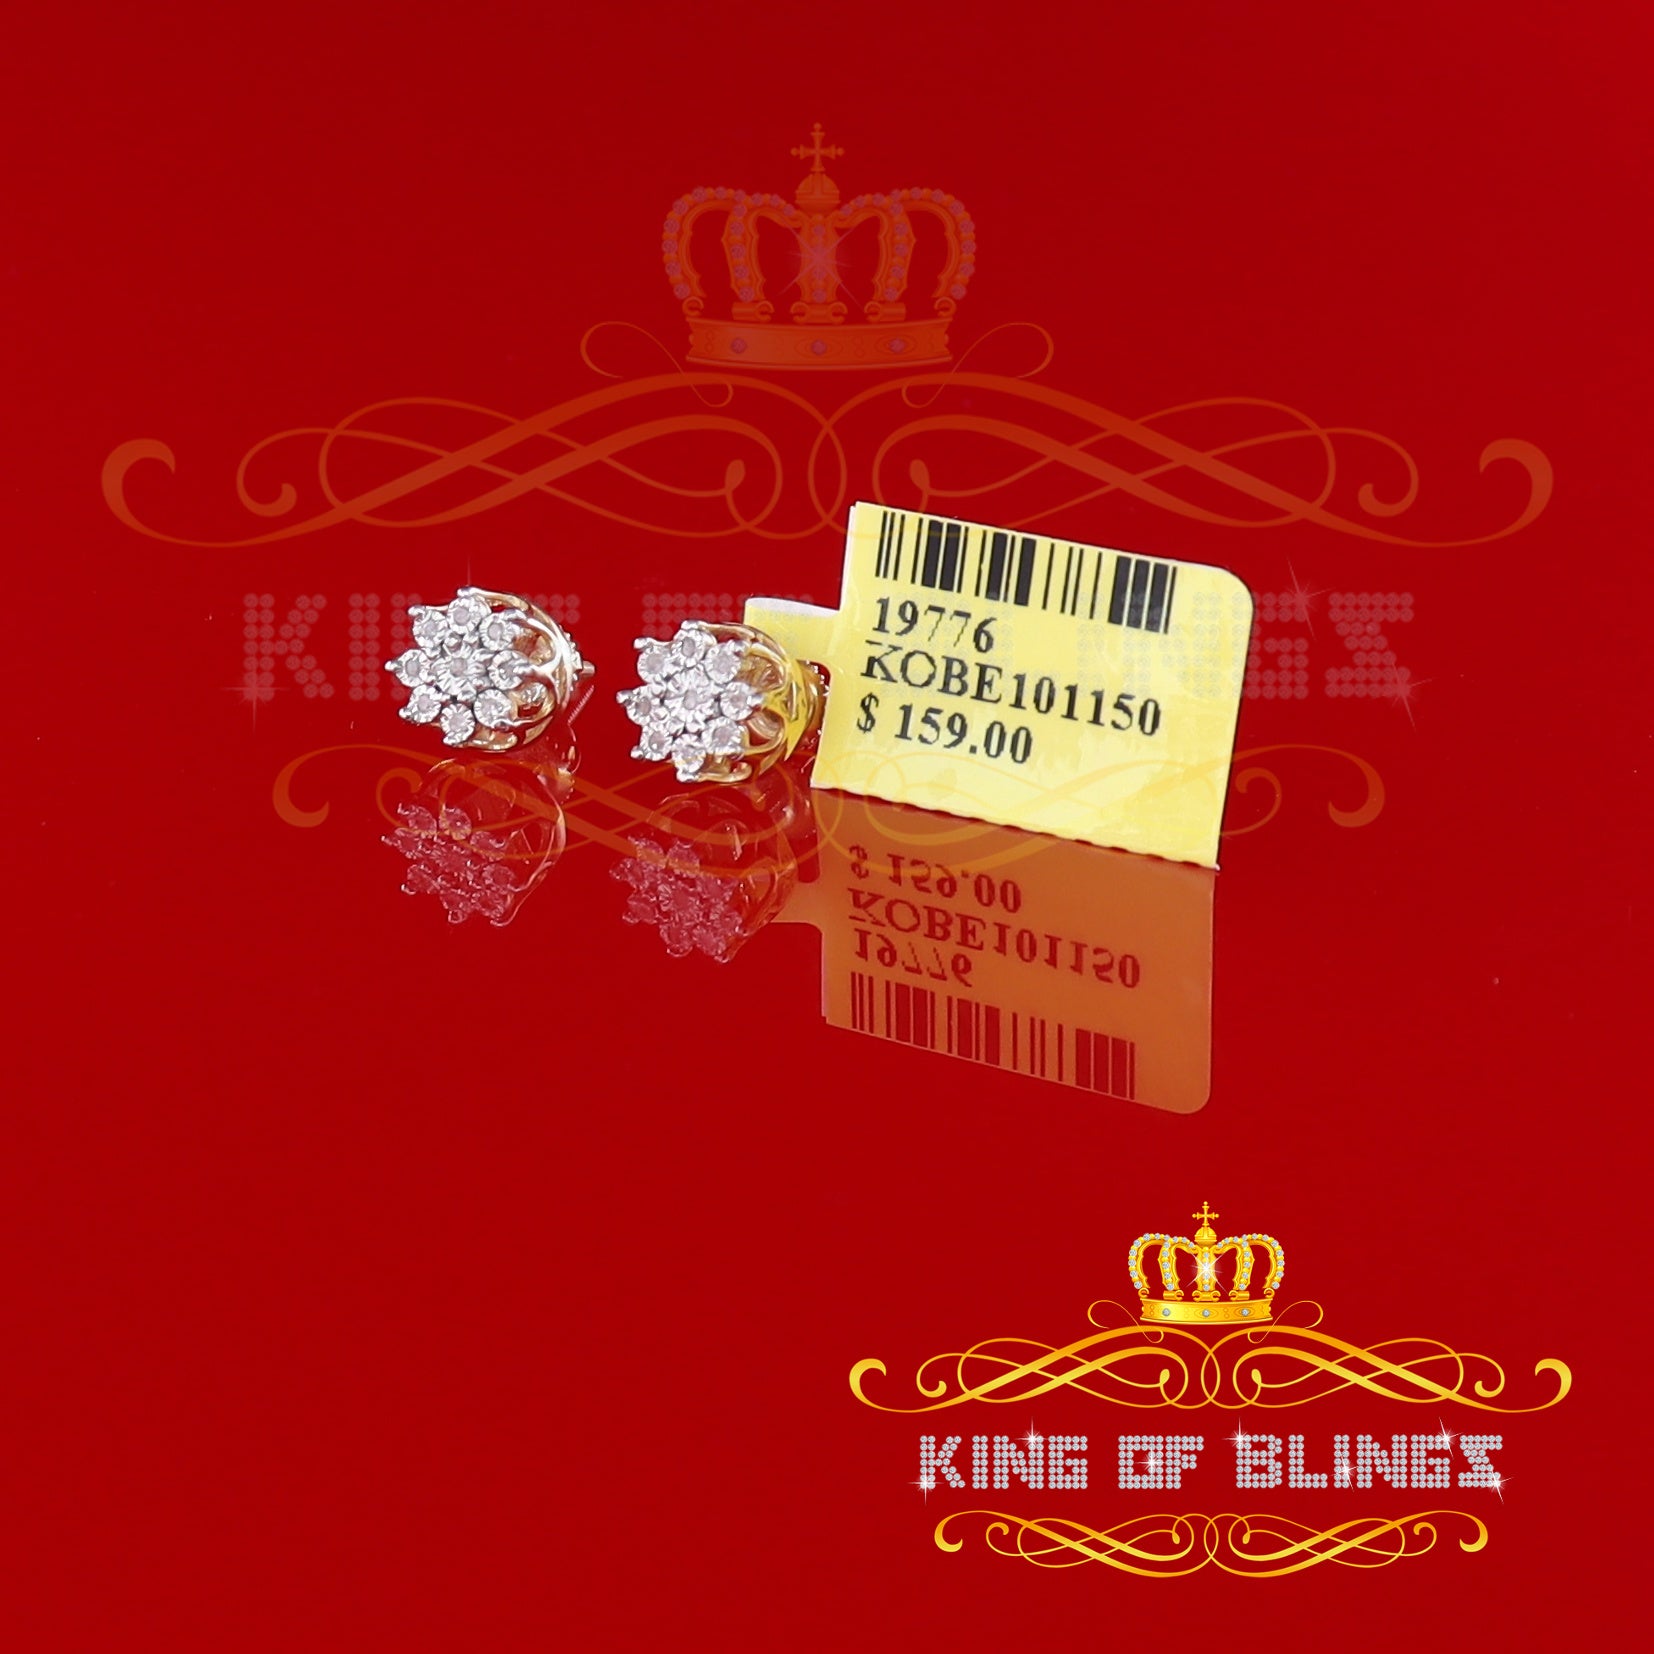 King of Blings-0.05ct Diamond 925 Sterling Silver Yellow For Men's & Women's Floral Earrings KING OF BLINGS